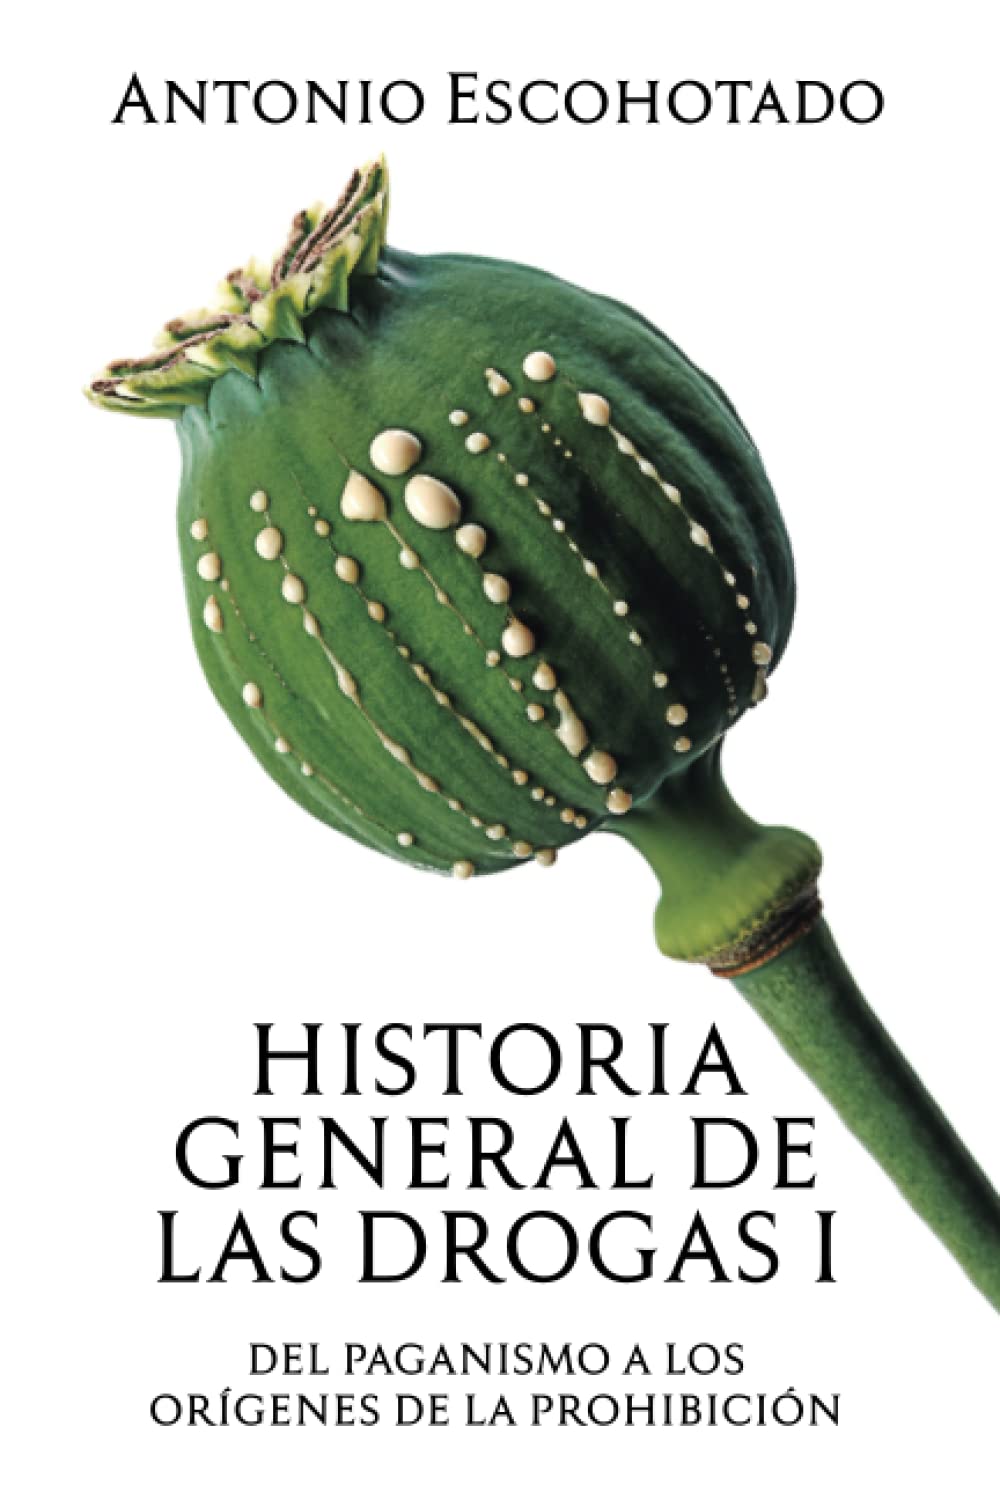 HISTORIA GENERAL DE LAS DROGAS - Antonio Escohotado